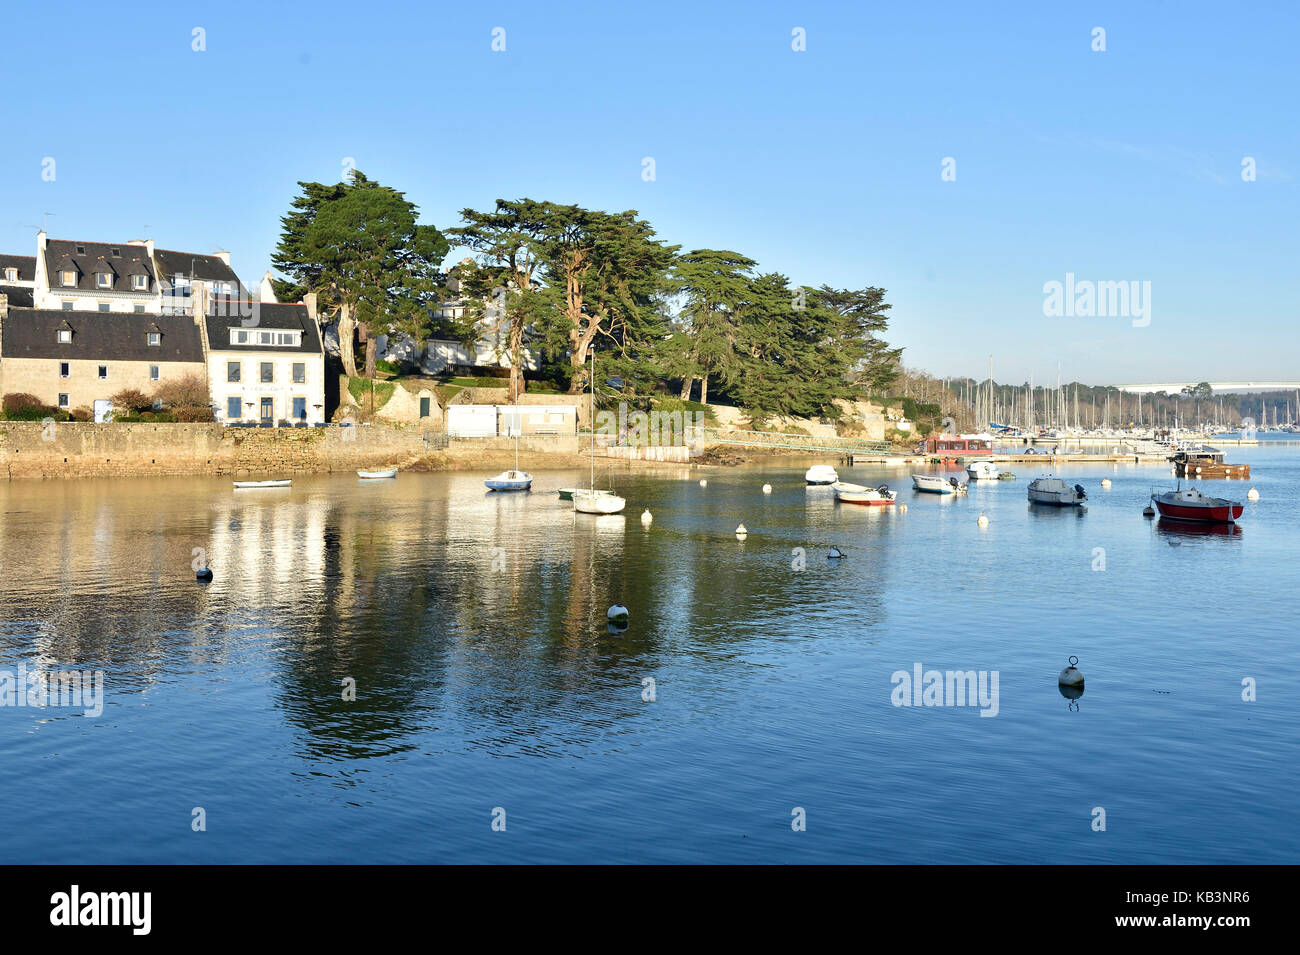 La France, Finistère, Combrit Sainte Marine, petit port le long de la rivière de l'odet bénodet face sur la rive sur Banque D'Images